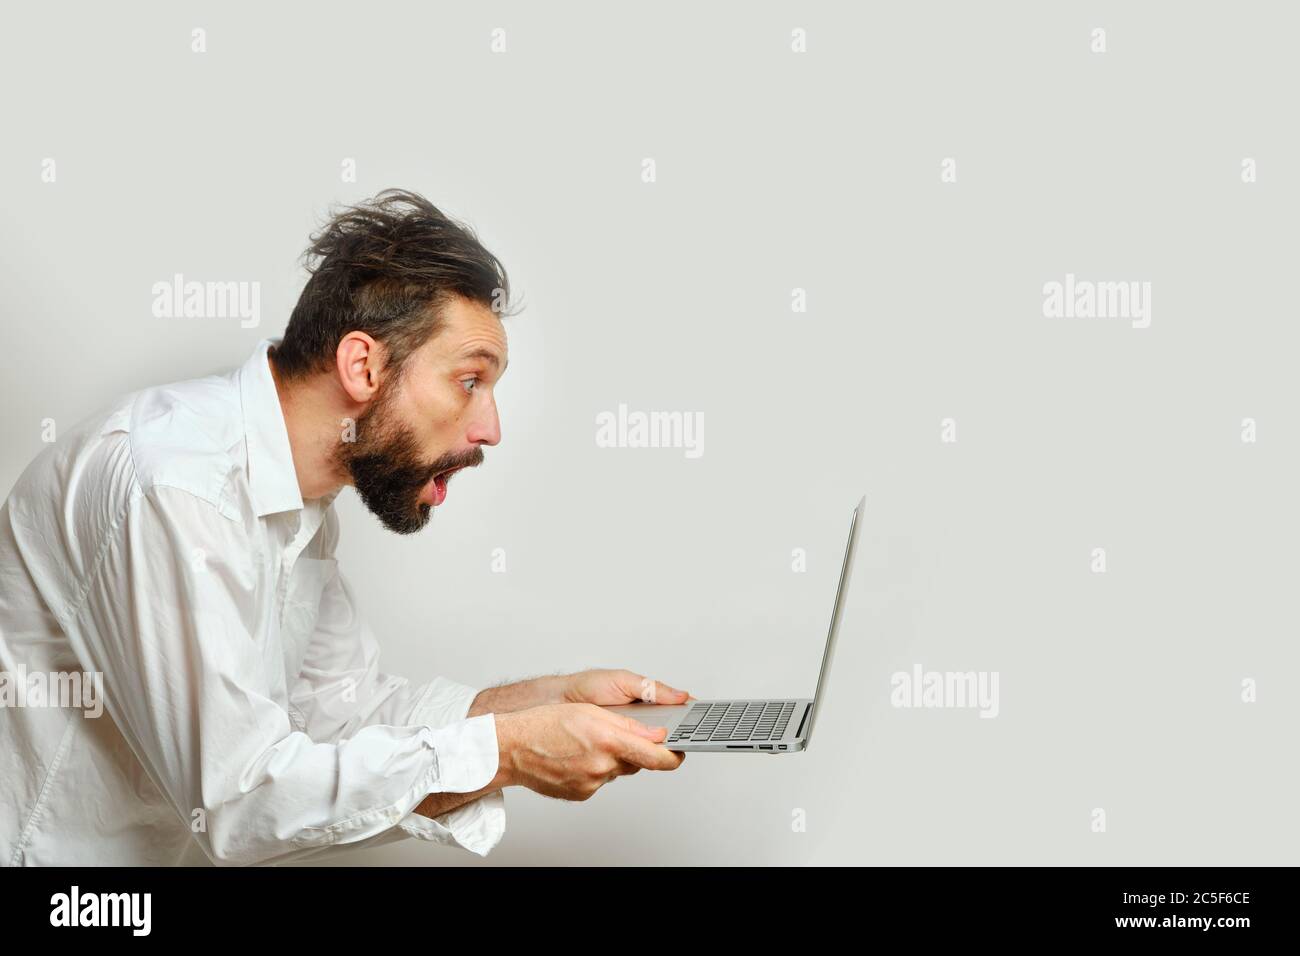 Un jeune homme de race blanche regarde avec surprise un moniteur d'ordinateur portable isolé sur un fond blanc. Émotions humaines, concept d'expression faciale Banque D'Images